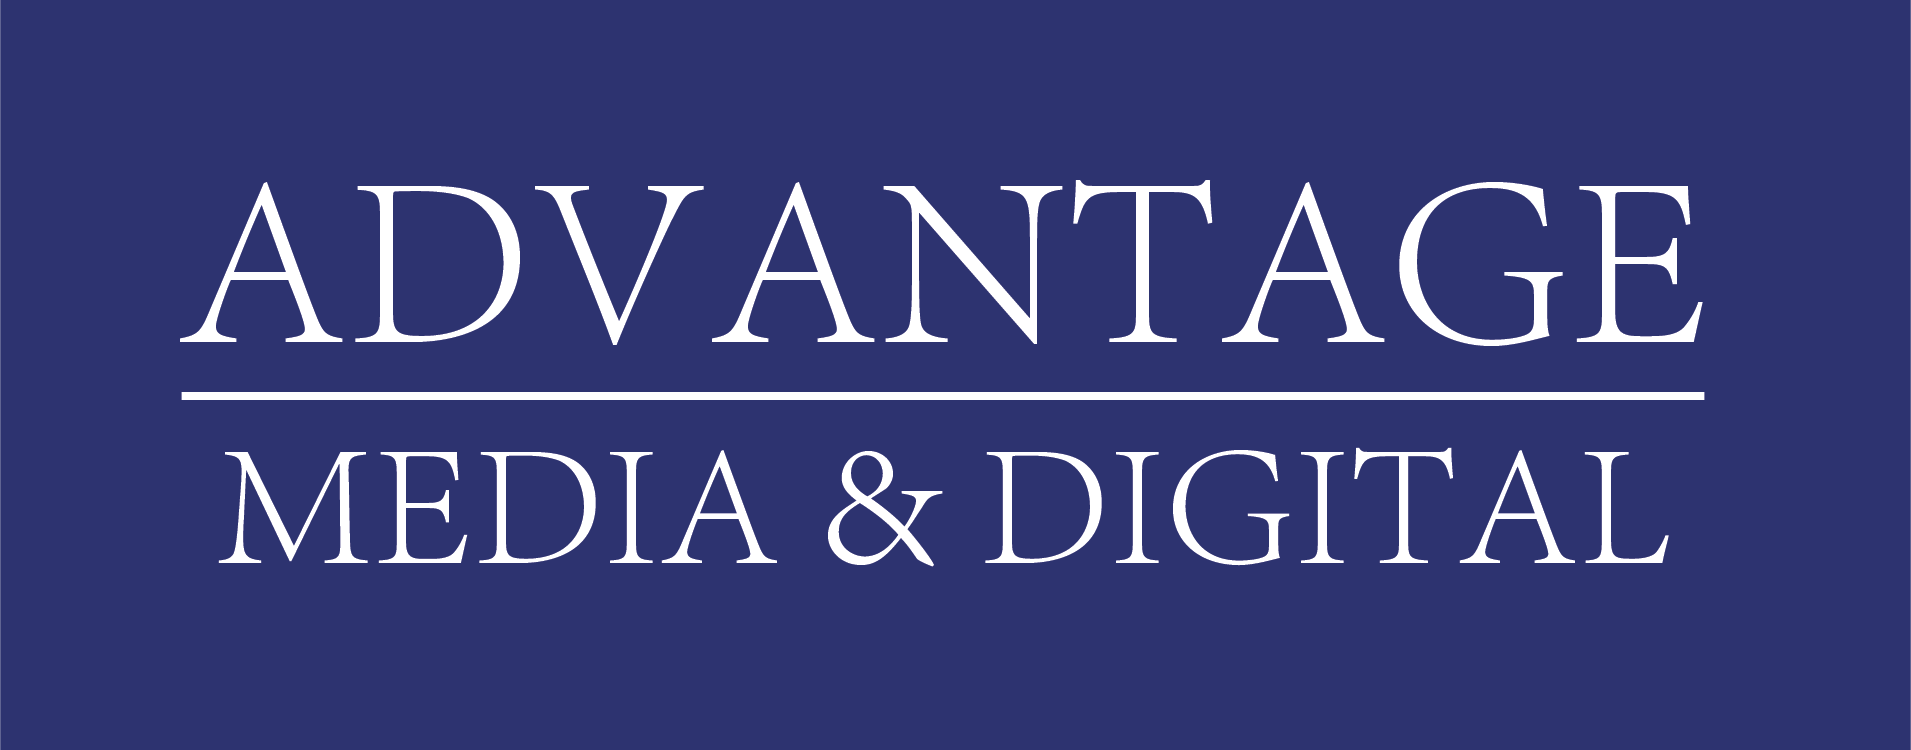 NEW Advantage Media logo-1